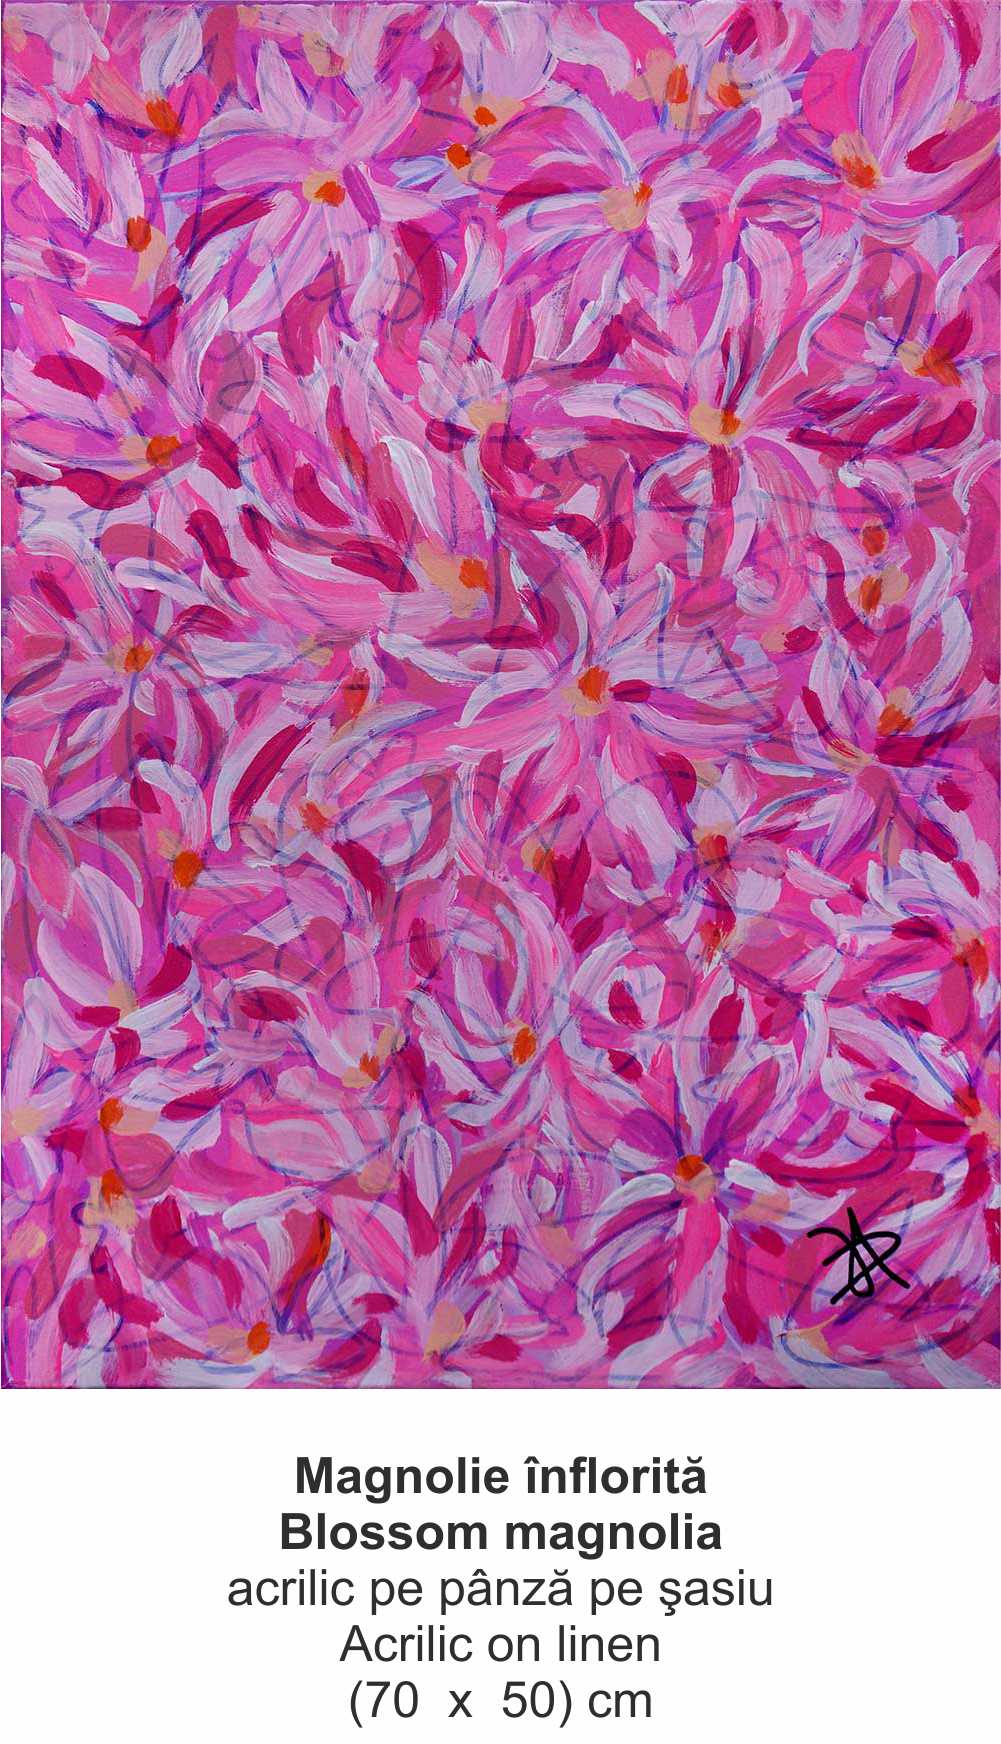 „Magnolie înflorită” („Blossom magnolia ”) - acrilic pe pânză pe şasiu (Acrilic on linen) - (70  x  50) cm - img 36